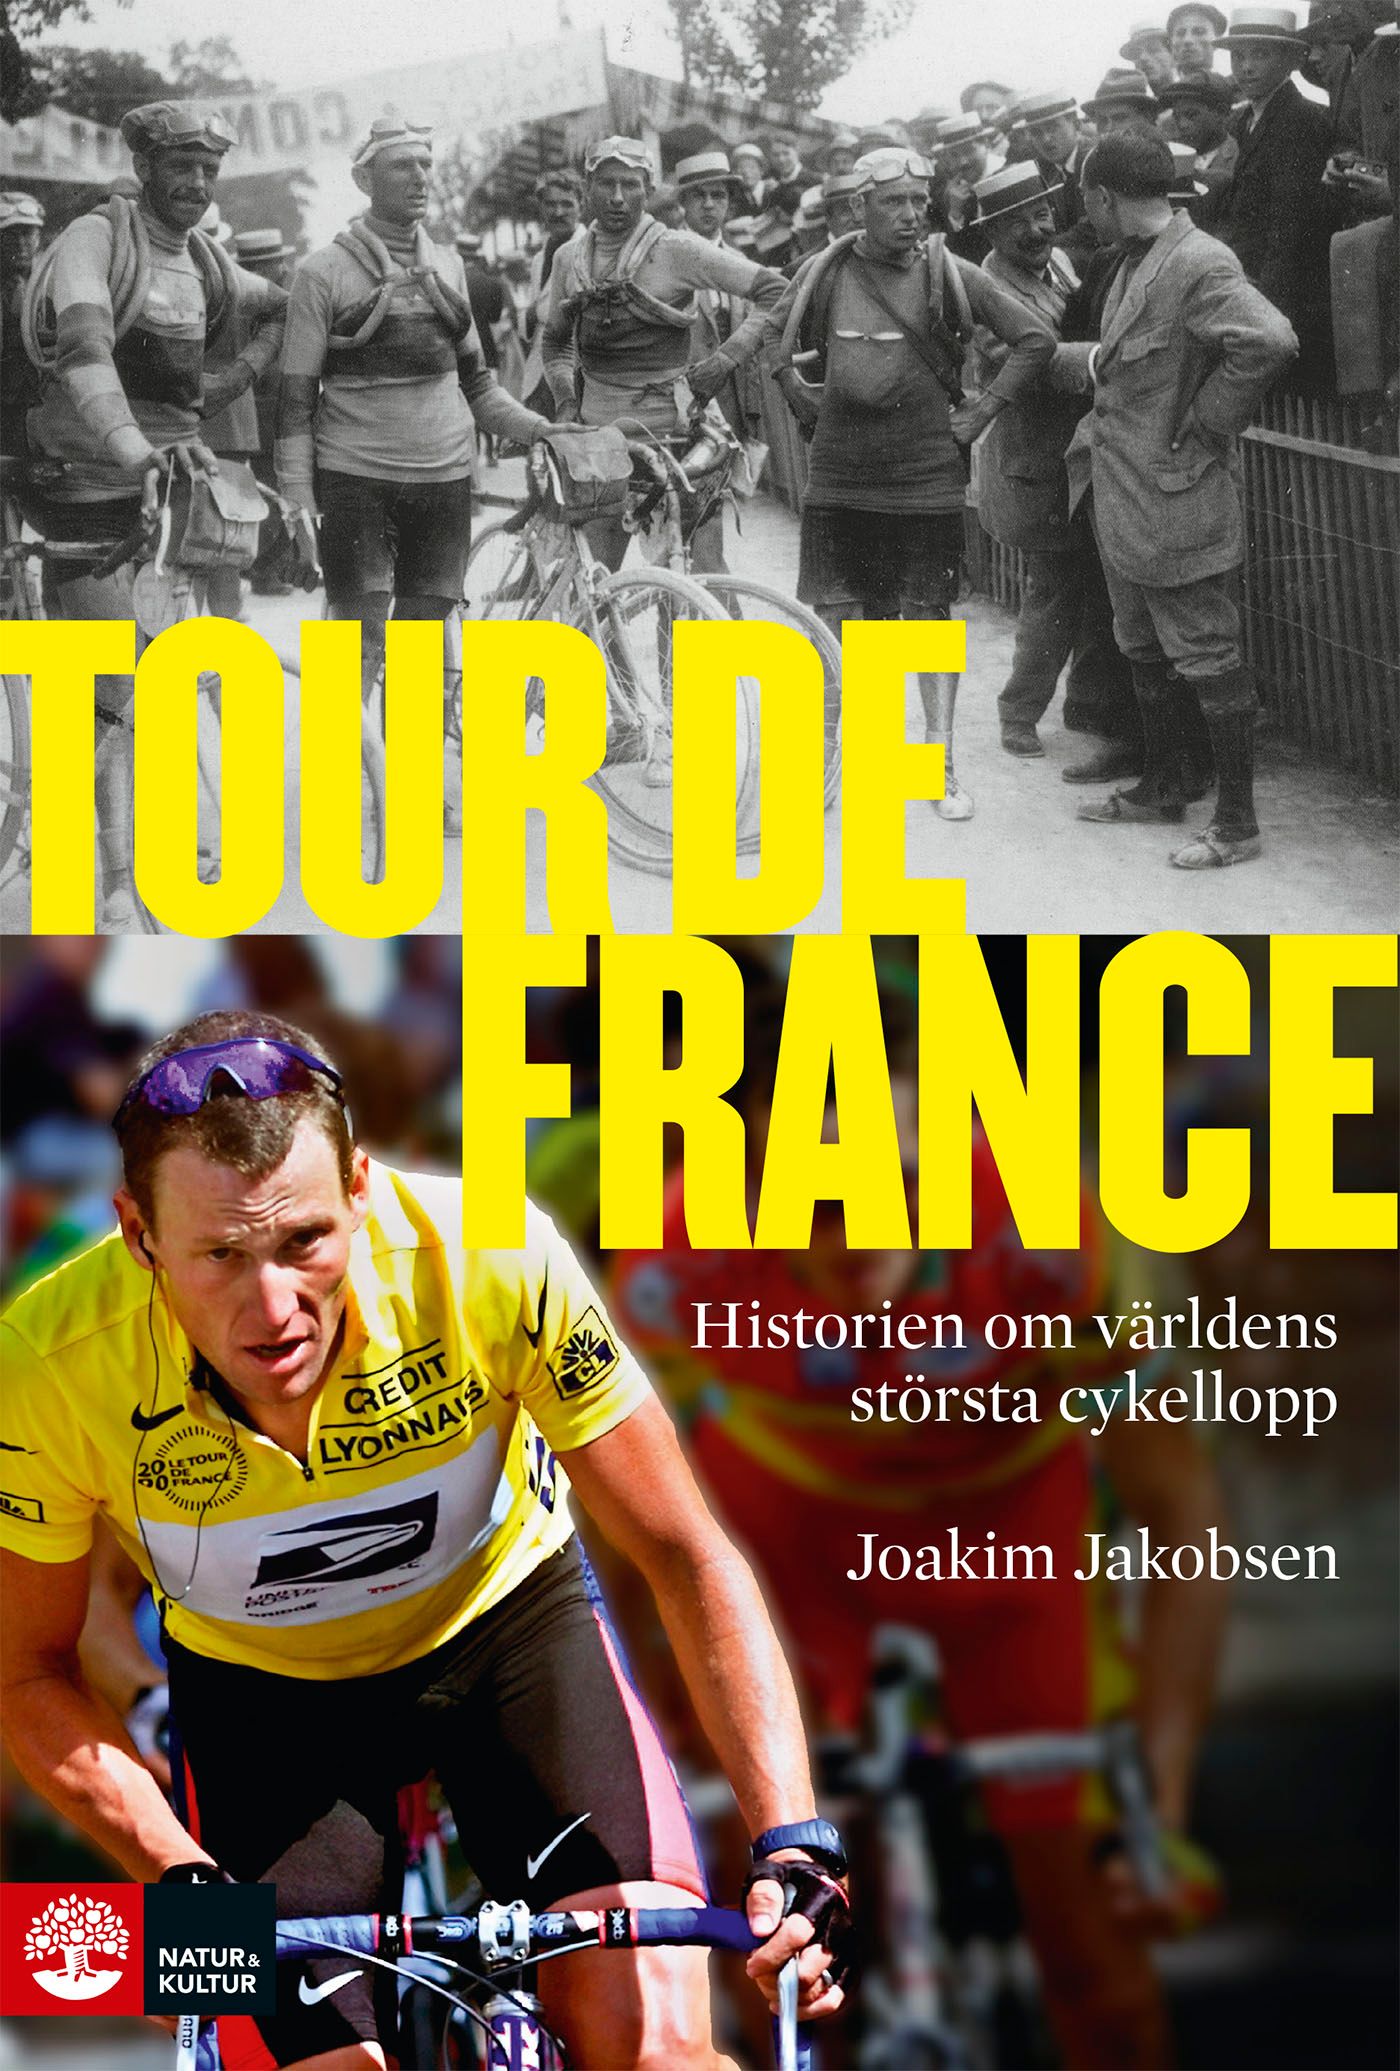 Tour de France: Historien om världens största cykellopp, eBook by Joakim Jakobsen